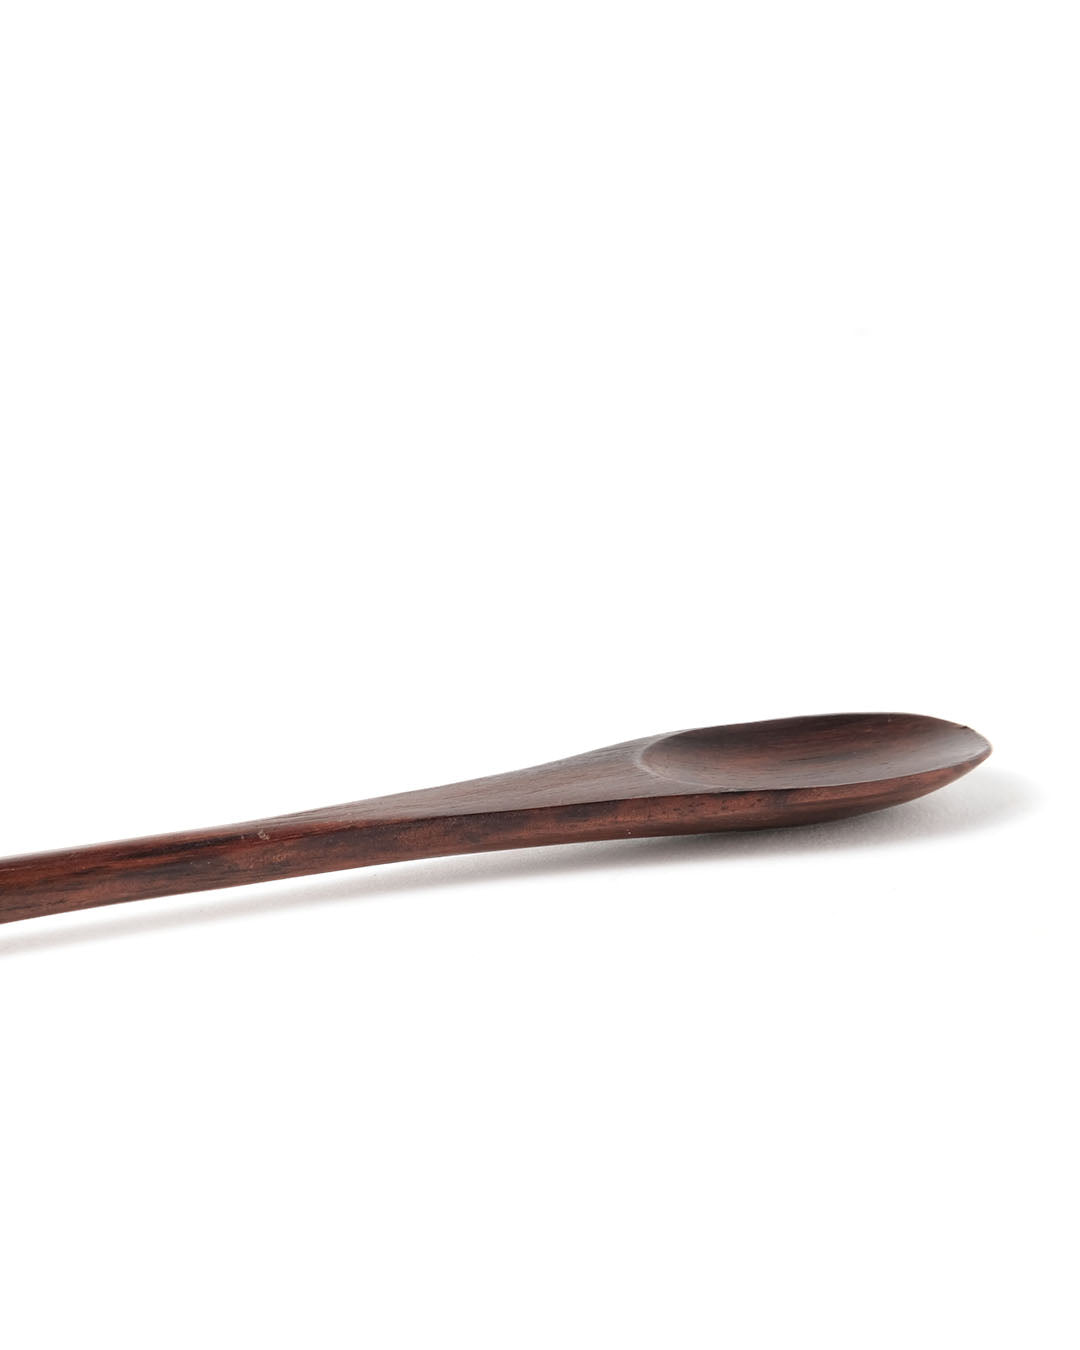 Set de 5 cucharas de madera de palmera natural larga Manado, hecho a mano, Largo 20 cm, fabricado en Indonesia